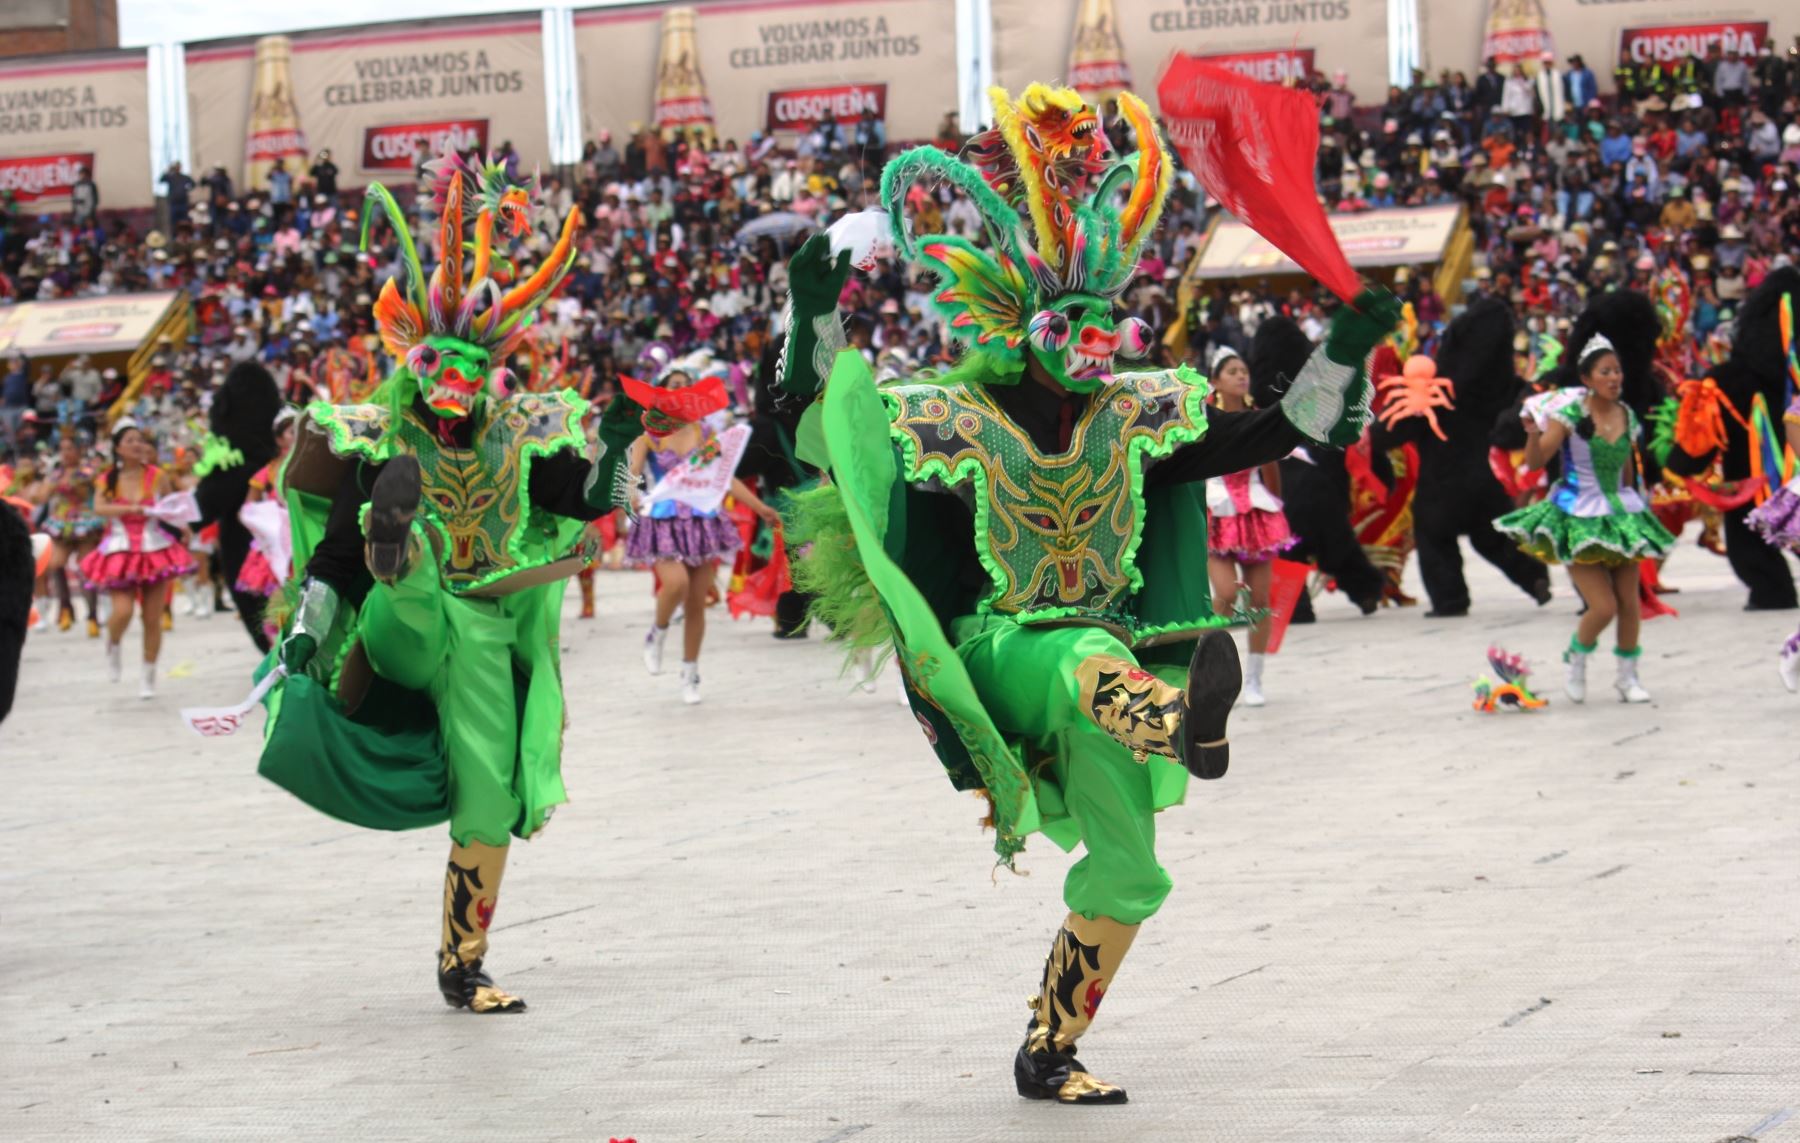 Asociación Cultural Incomparable Gran Diablada de la PNP, encabezó concurso de danzas de Traje de Luces en festividad de Virgen de la Candelaria. ANDINA